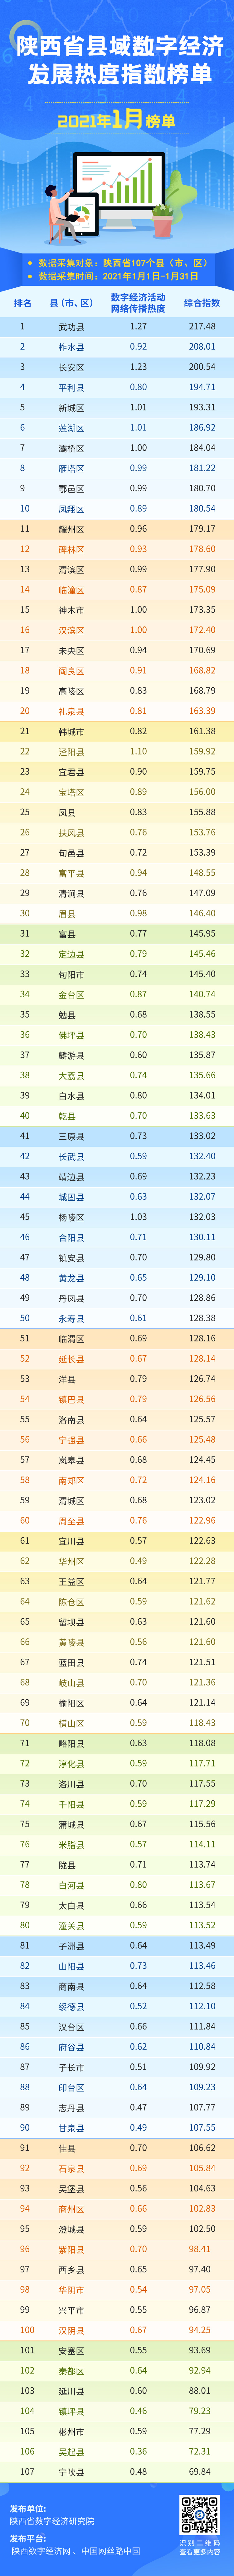 2021年1月份陕西省县域数字经济发展热度指数